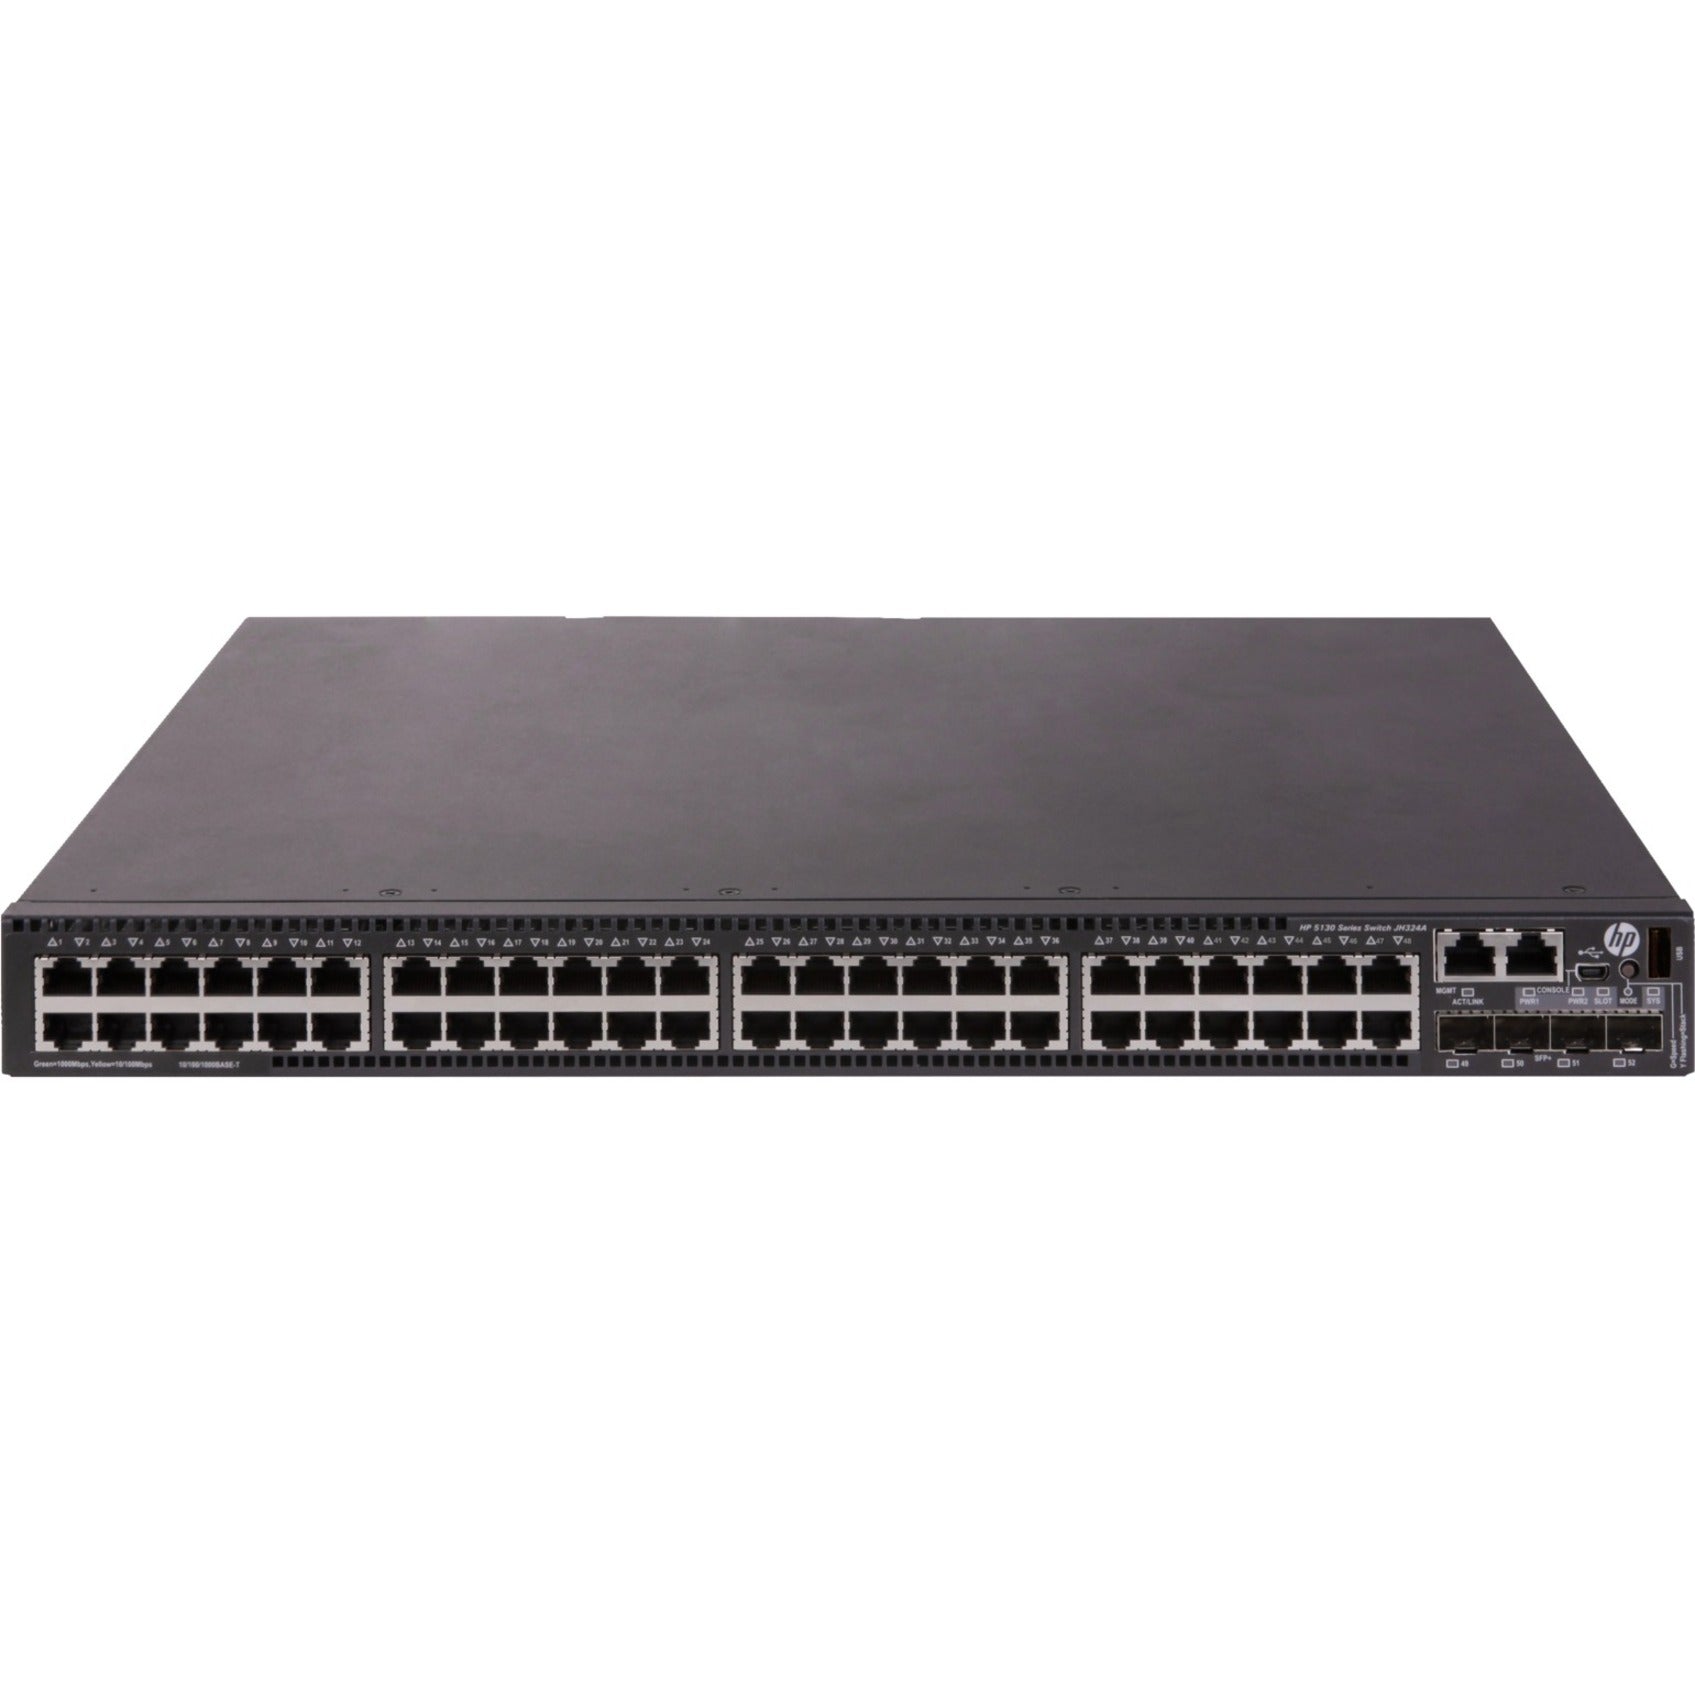 HPE JH324A 5130 48G 4SFP+ 1-slot HI Switch, Gigabit Ethernet Network, 10 Gigabit Ethernet Expansion Slot, Rack-mountable